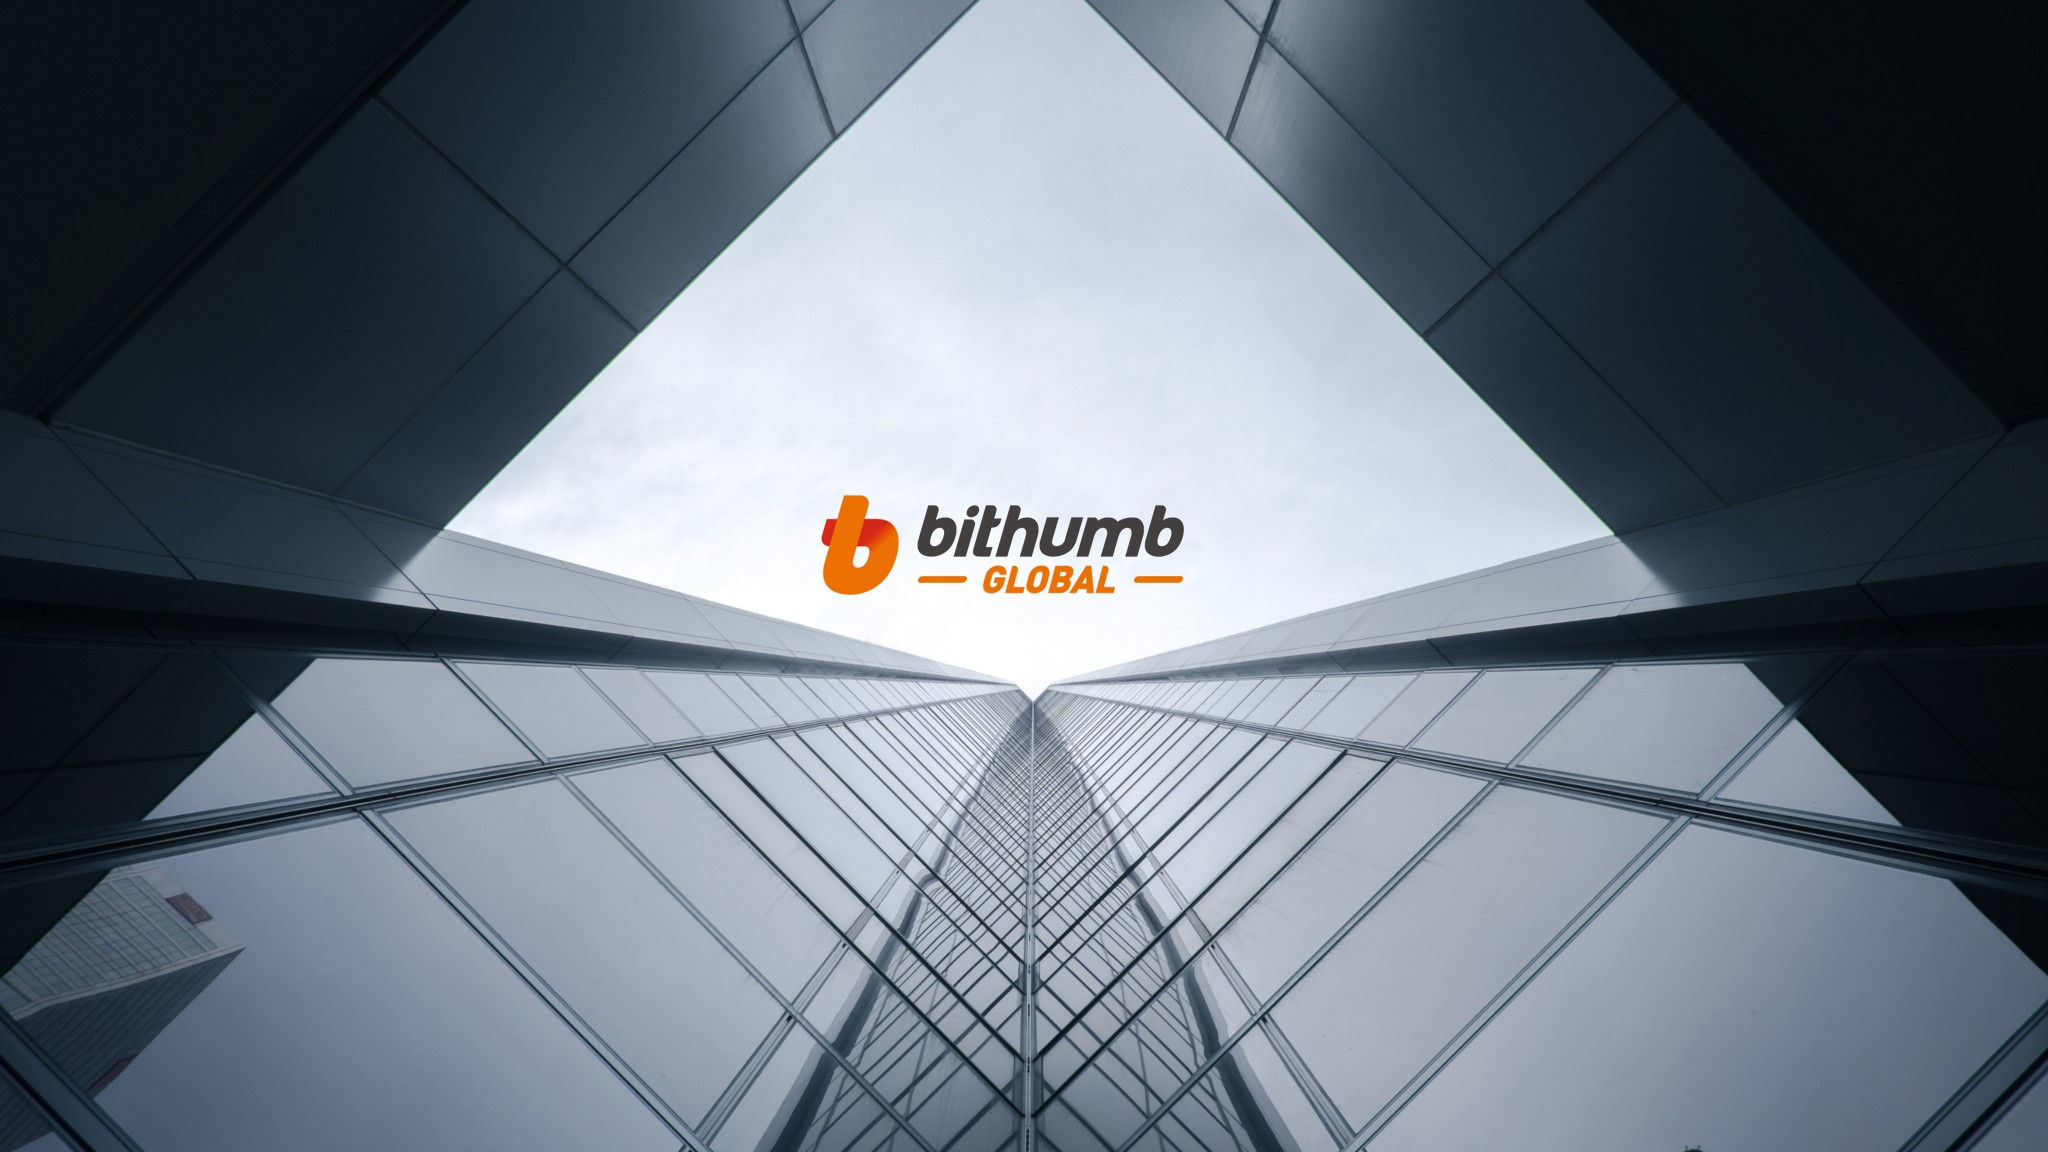 Bithumb Global | LinkedIn